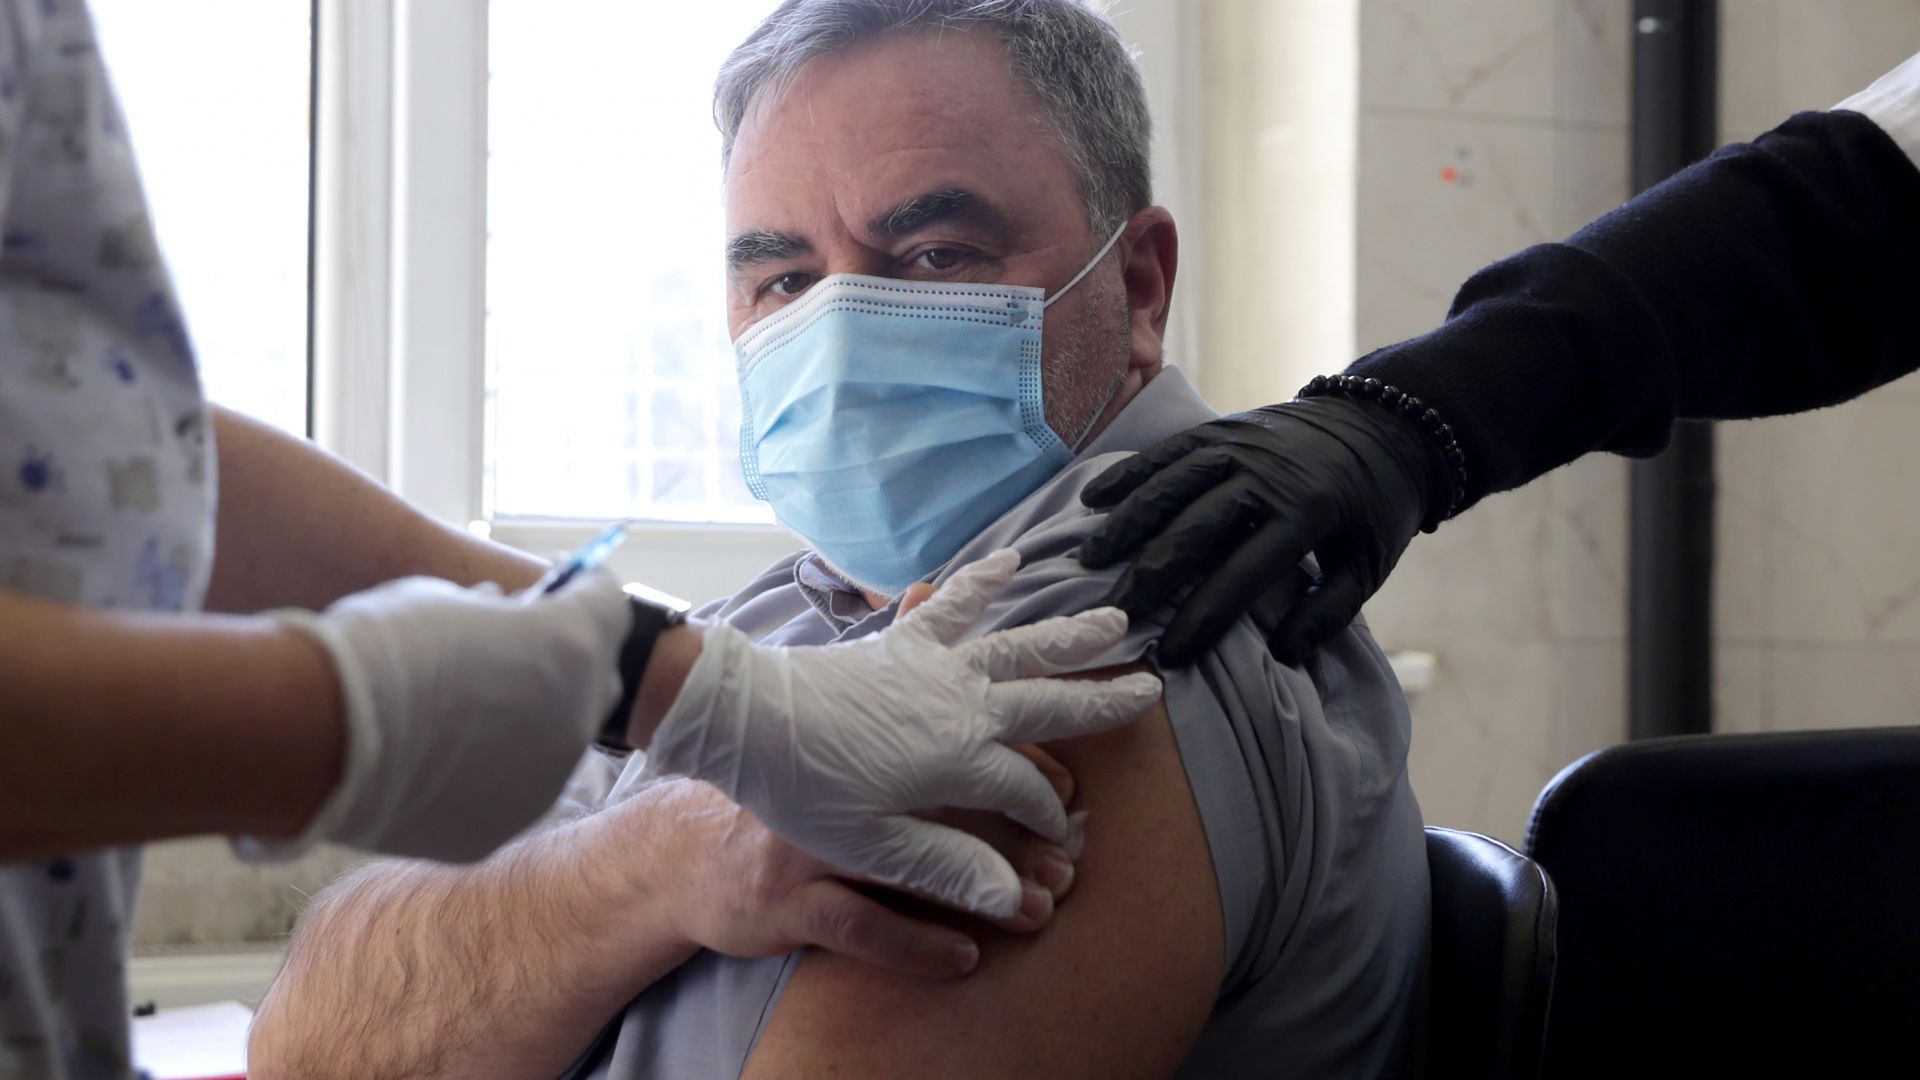 Кунчев: Масовата ваксинация може да започне през април (снимки)